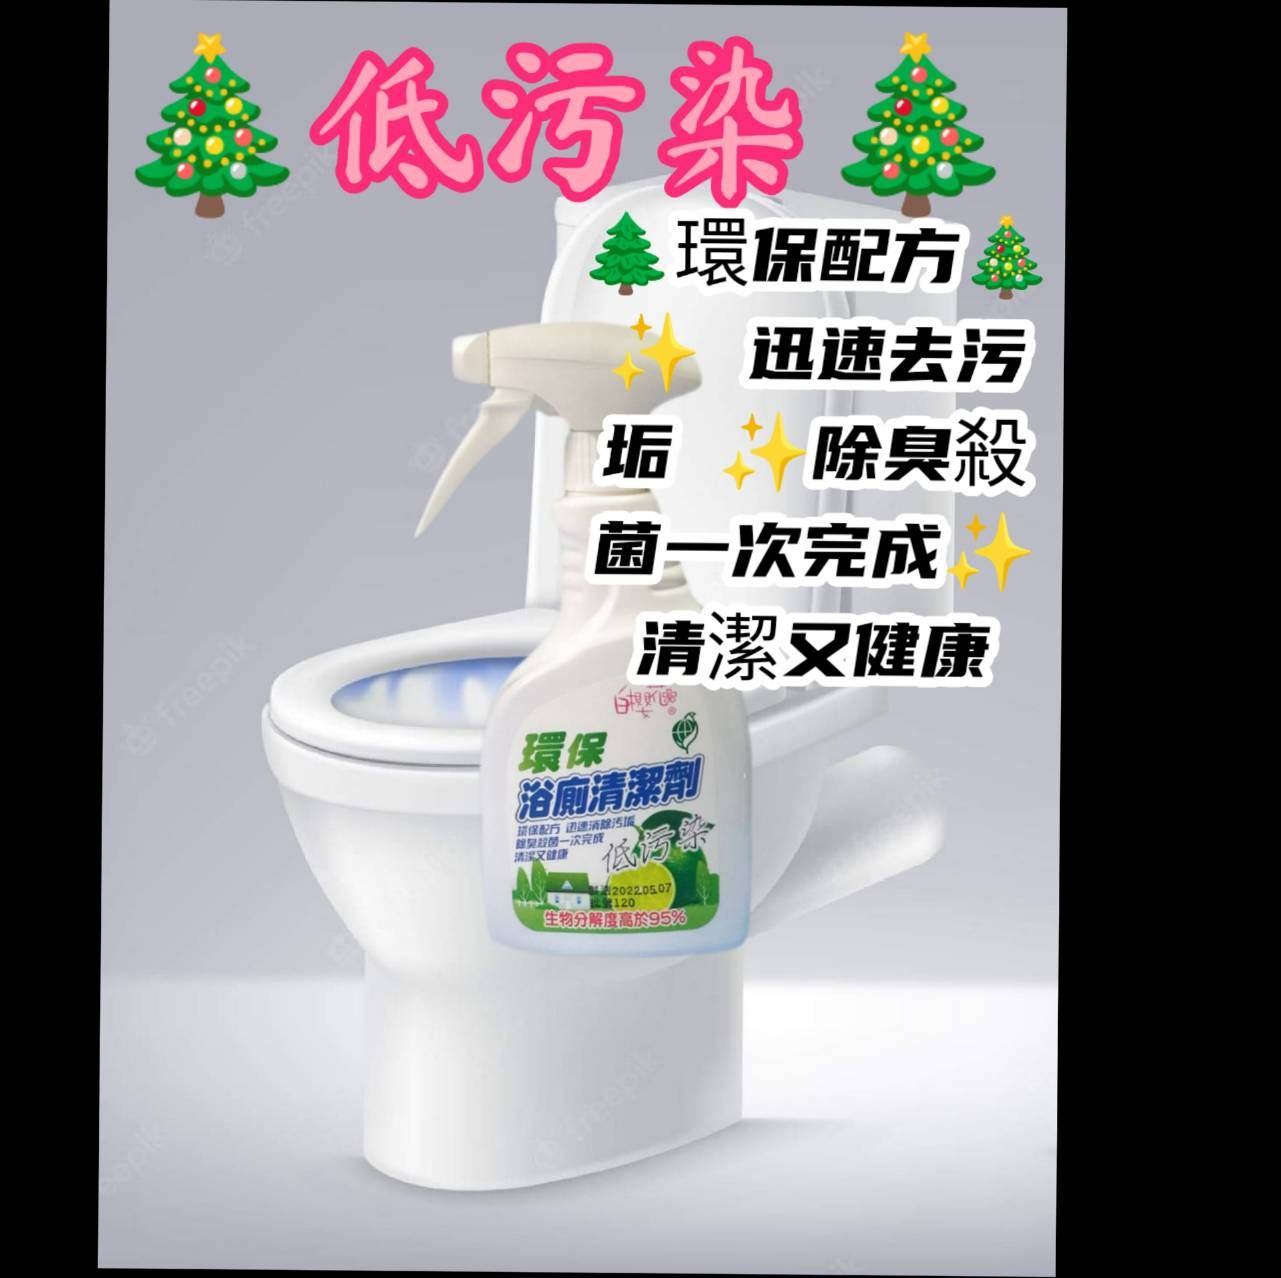 🌸白櫻花🌸環保浴廁清潔劑🌲環保配方 迅速去污垢 除臭殺菌一次完成 清潔又健康🌳💖🎄低污染🎄